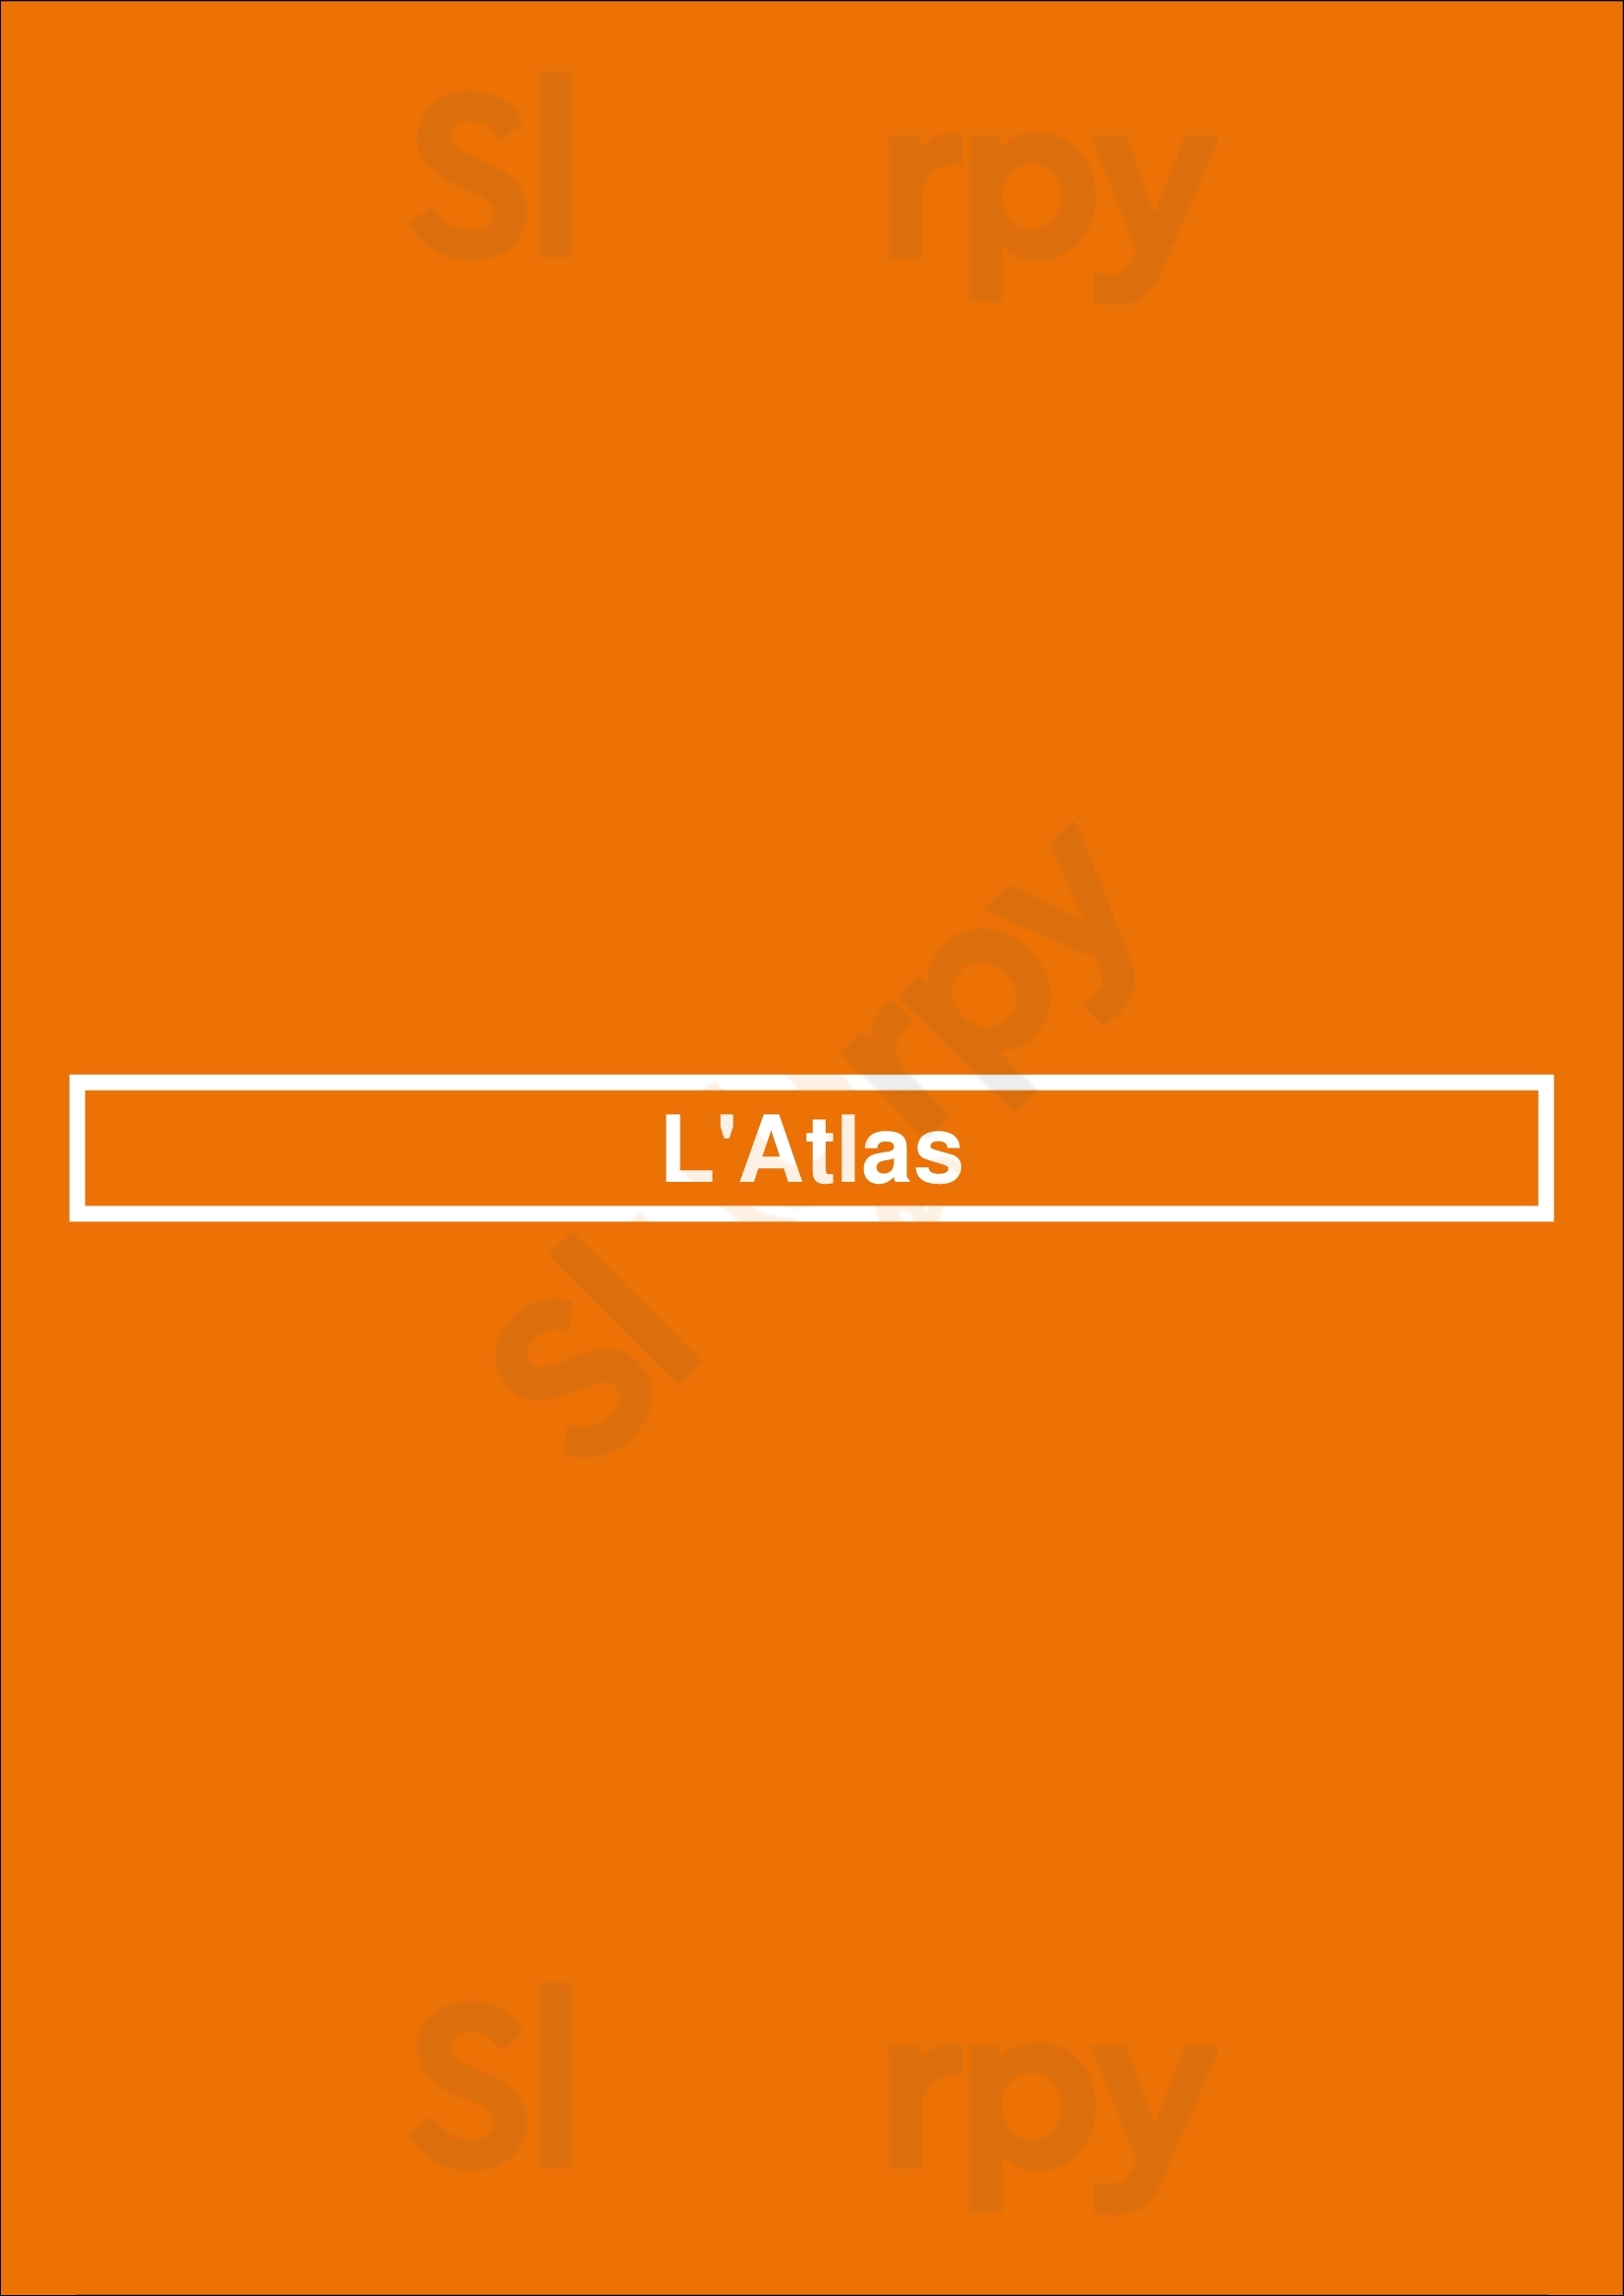 L'atlas Paris Menu - 1